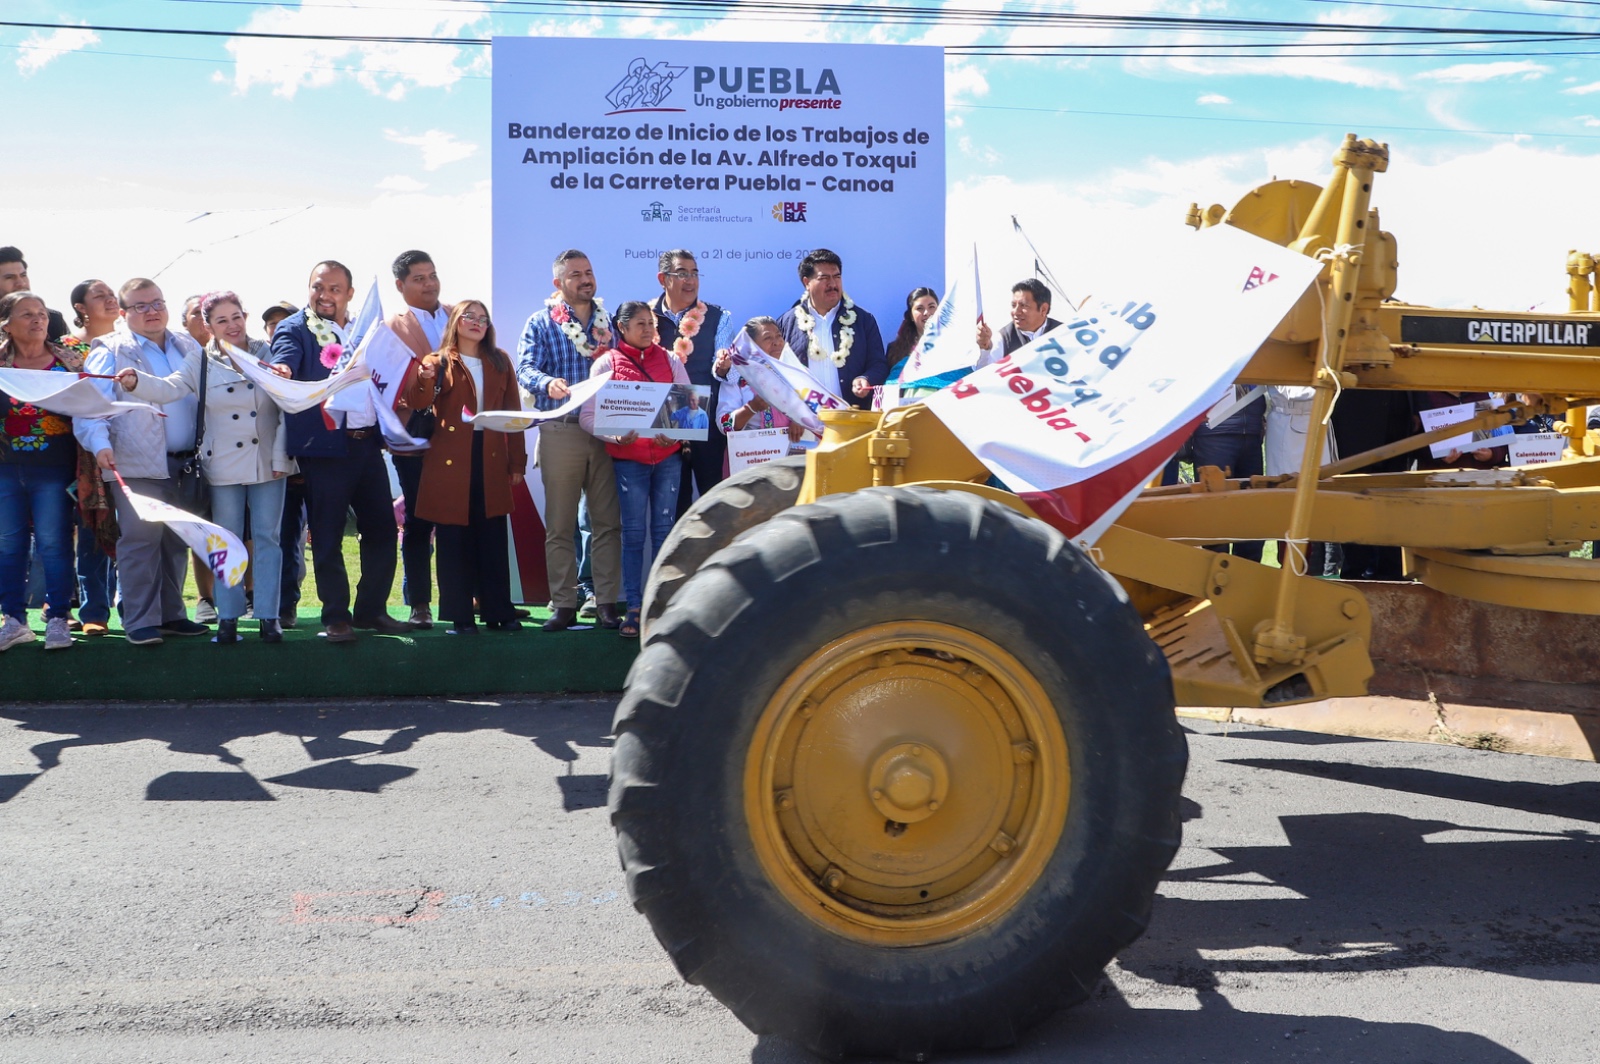 Inicia Céspedes ampliación de la carretera Puebla-Canoa